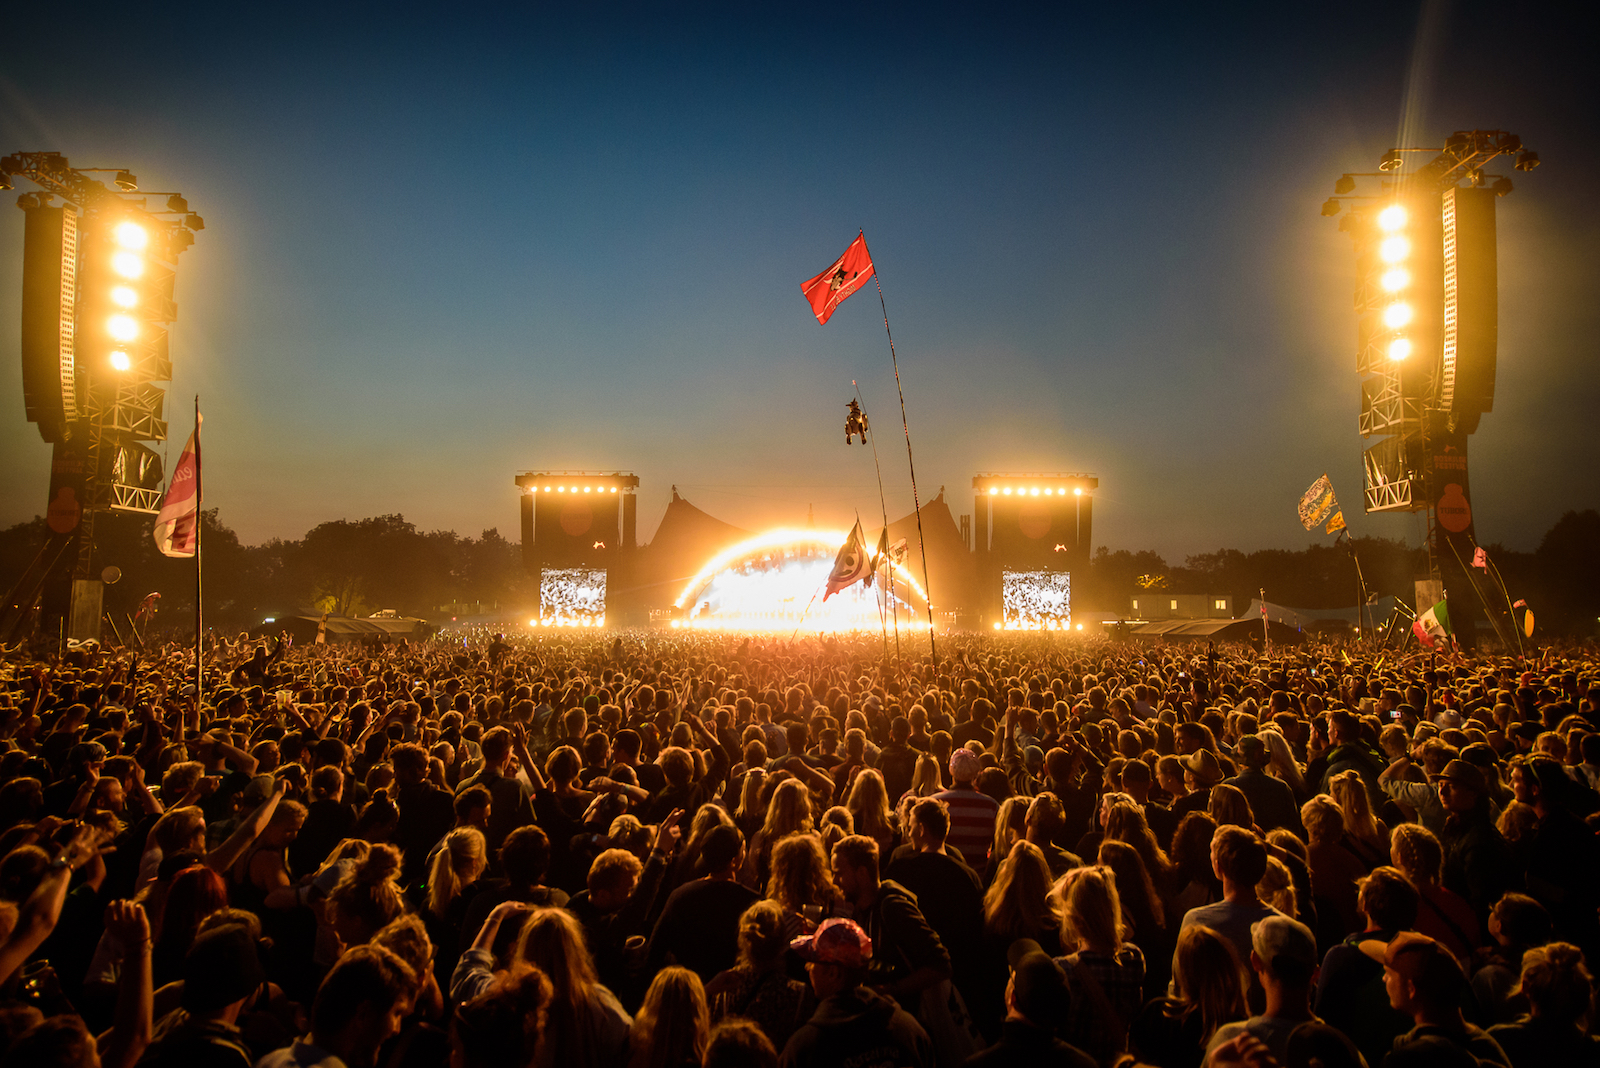 Review Roskilde: Chuva, Lama, Frio e Uma Experiência Completa de Festival